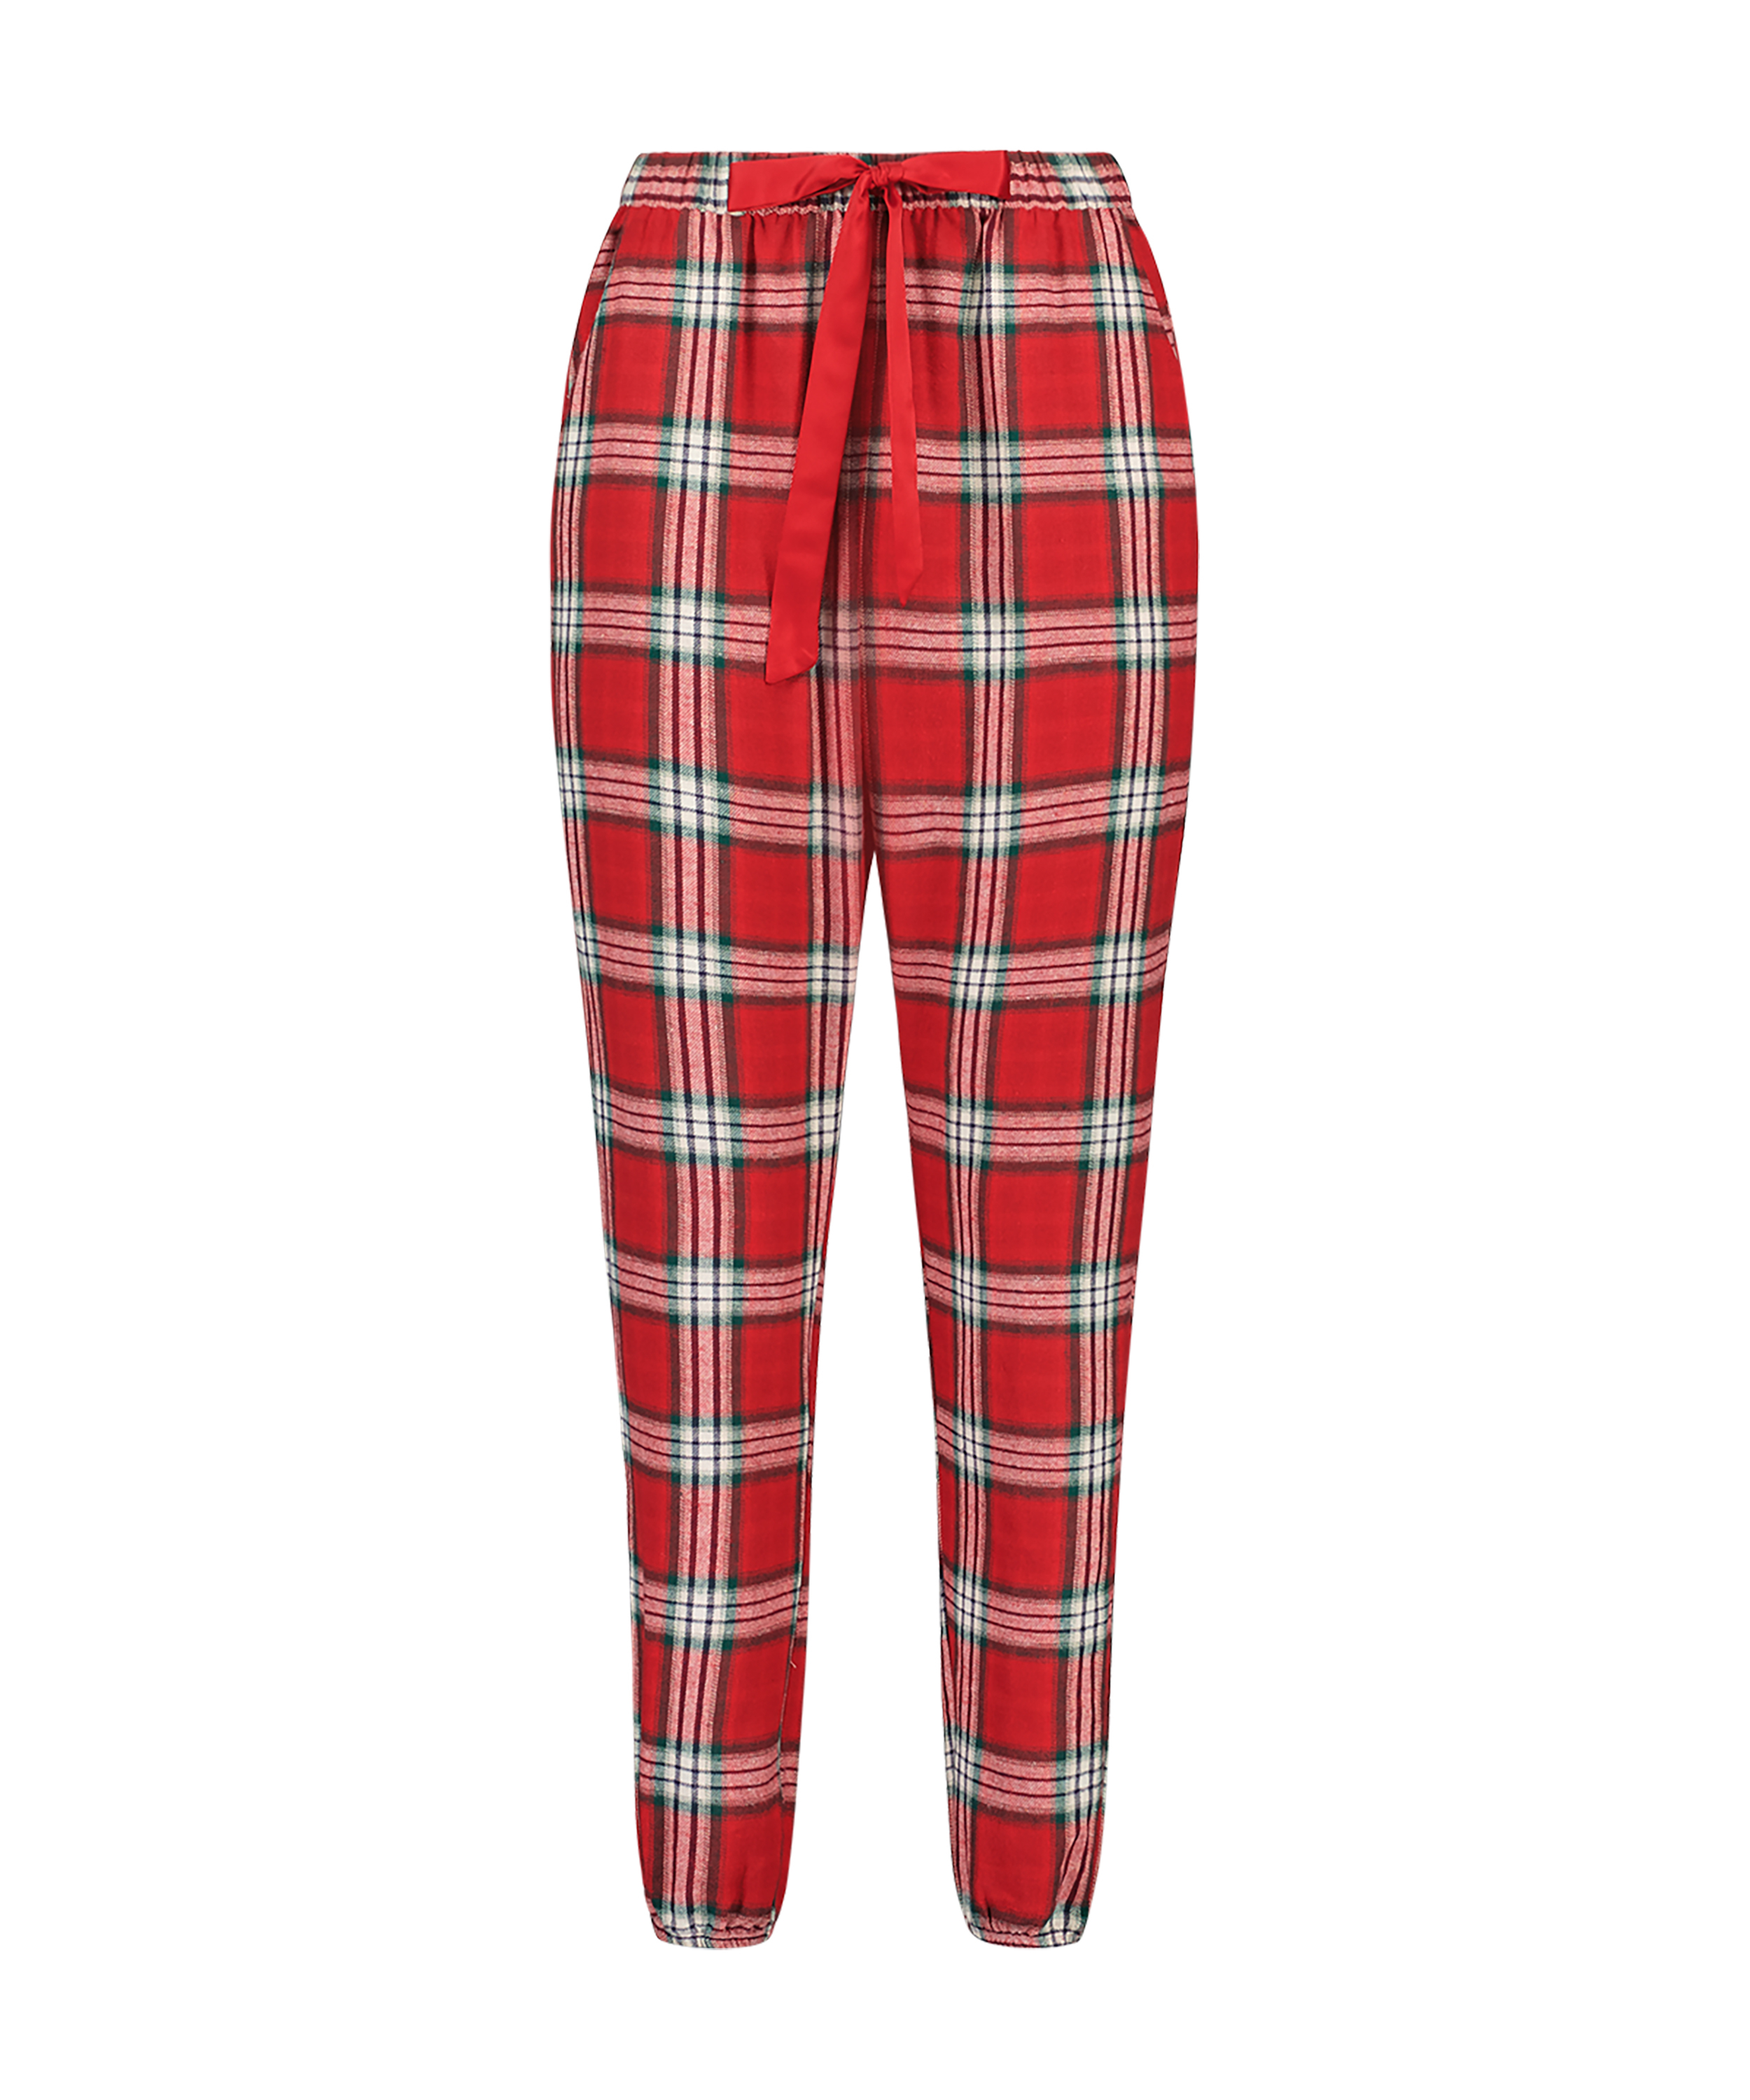 Pantalón de pijama Petite Twill Check, Rojo, main